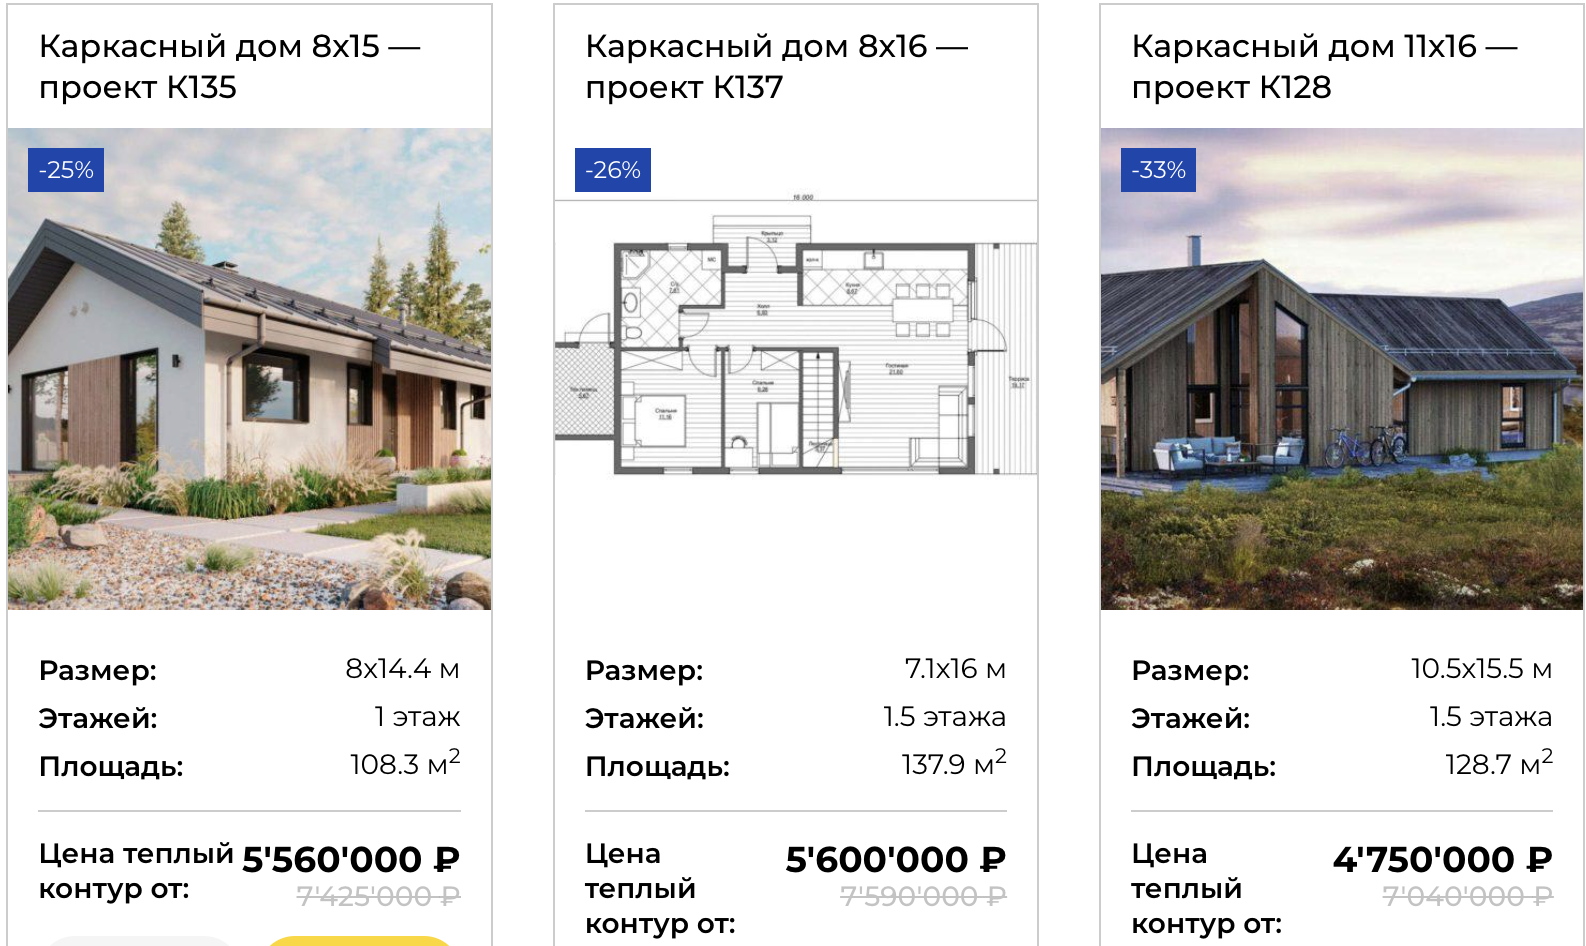 Особенности и преимущества строительства каркасного дома под ключ в Санкт Петербурге в компании Elk House.